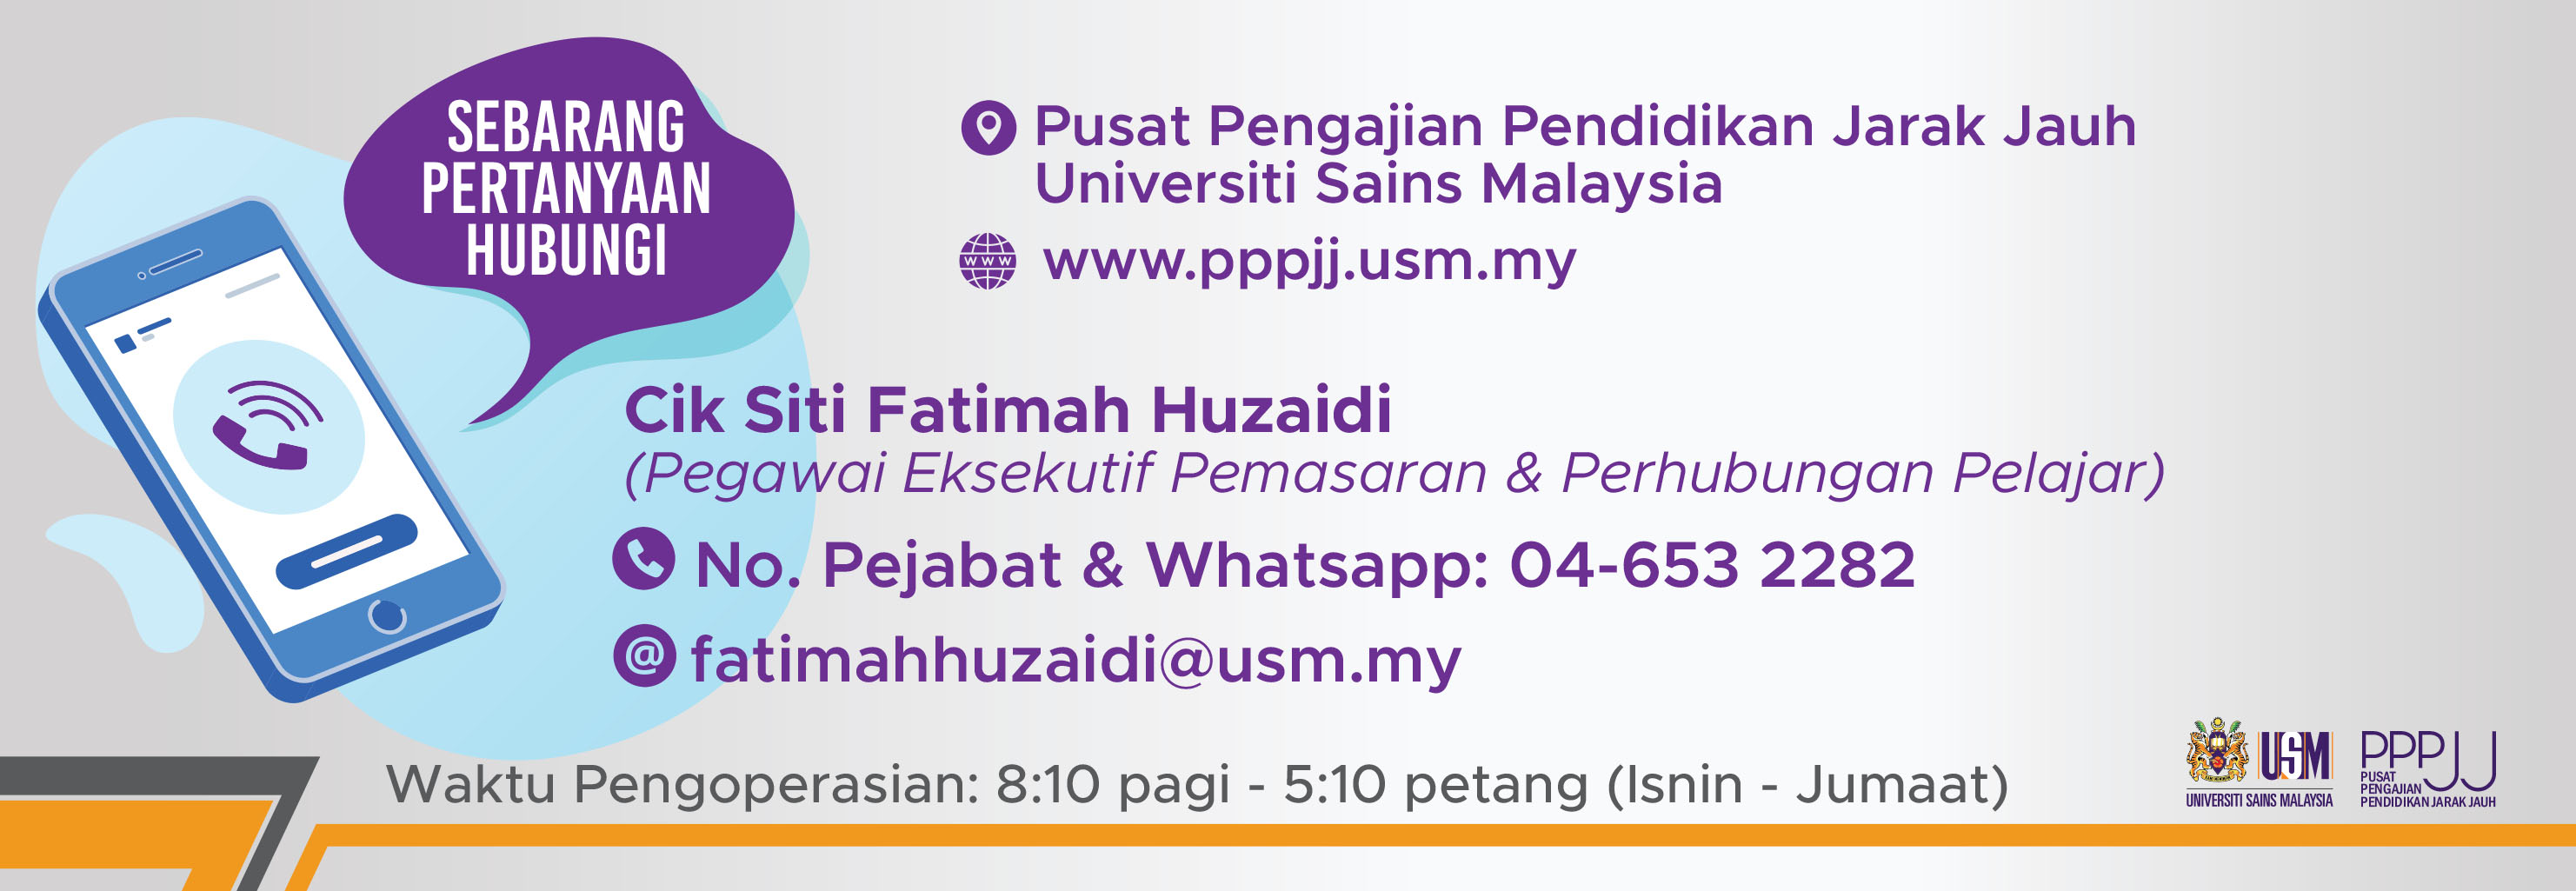 Sebarang Pertanyaan Cik Fatimah web banner 2022